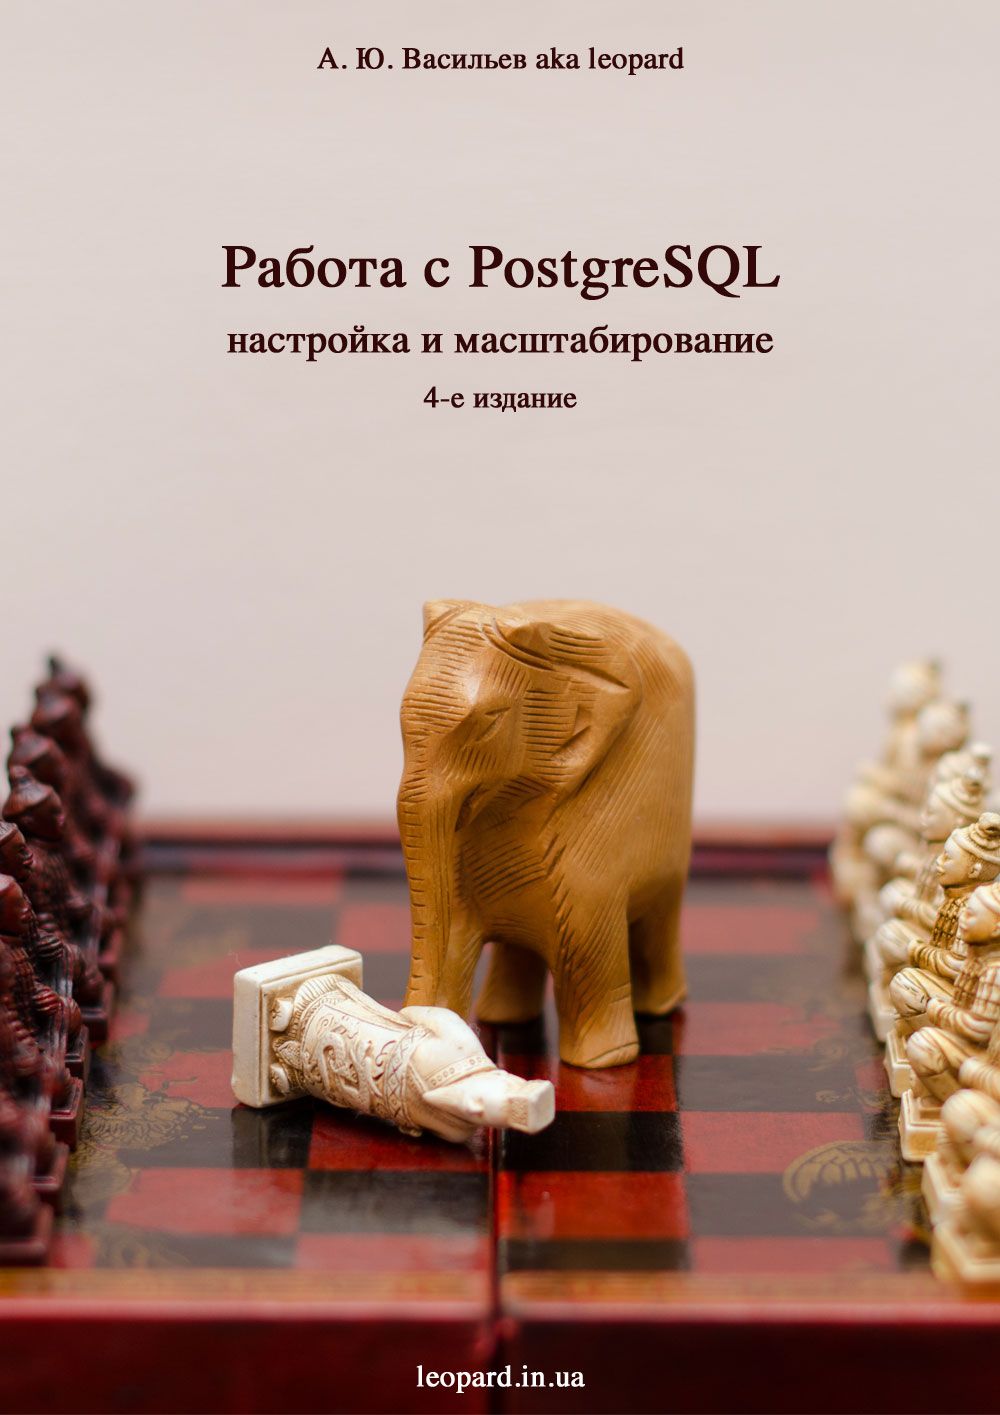 Работа с PostgreSQL: настройка и масштабирование